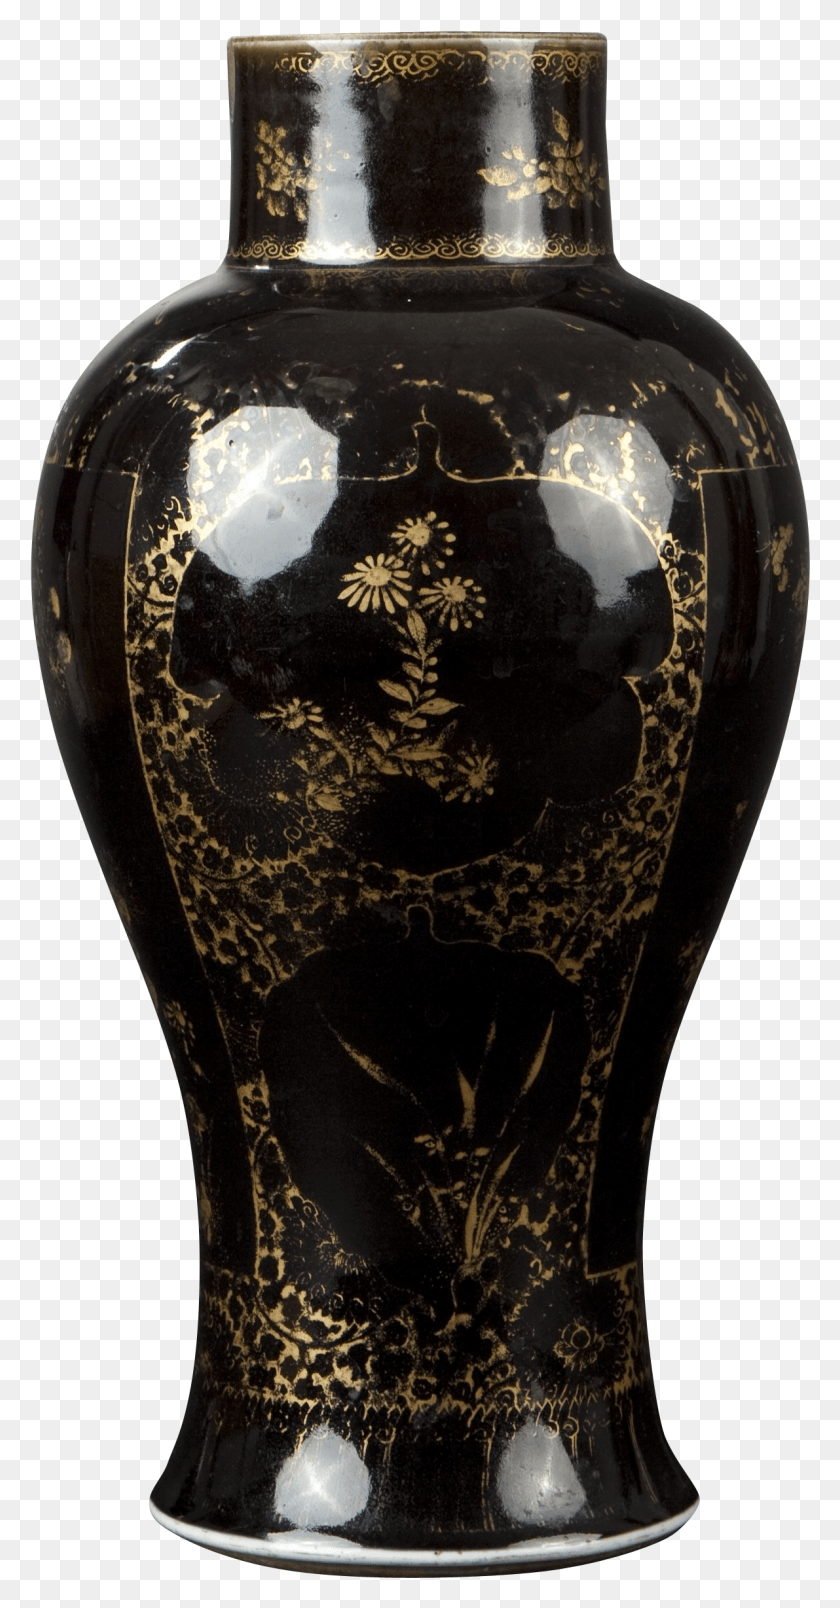 1191x2364 A Chinese Porcelain Black Mirror Glazed Vase Balustre Blue And White Porcelain, Jar, Pottery, Urn HD PNG Download